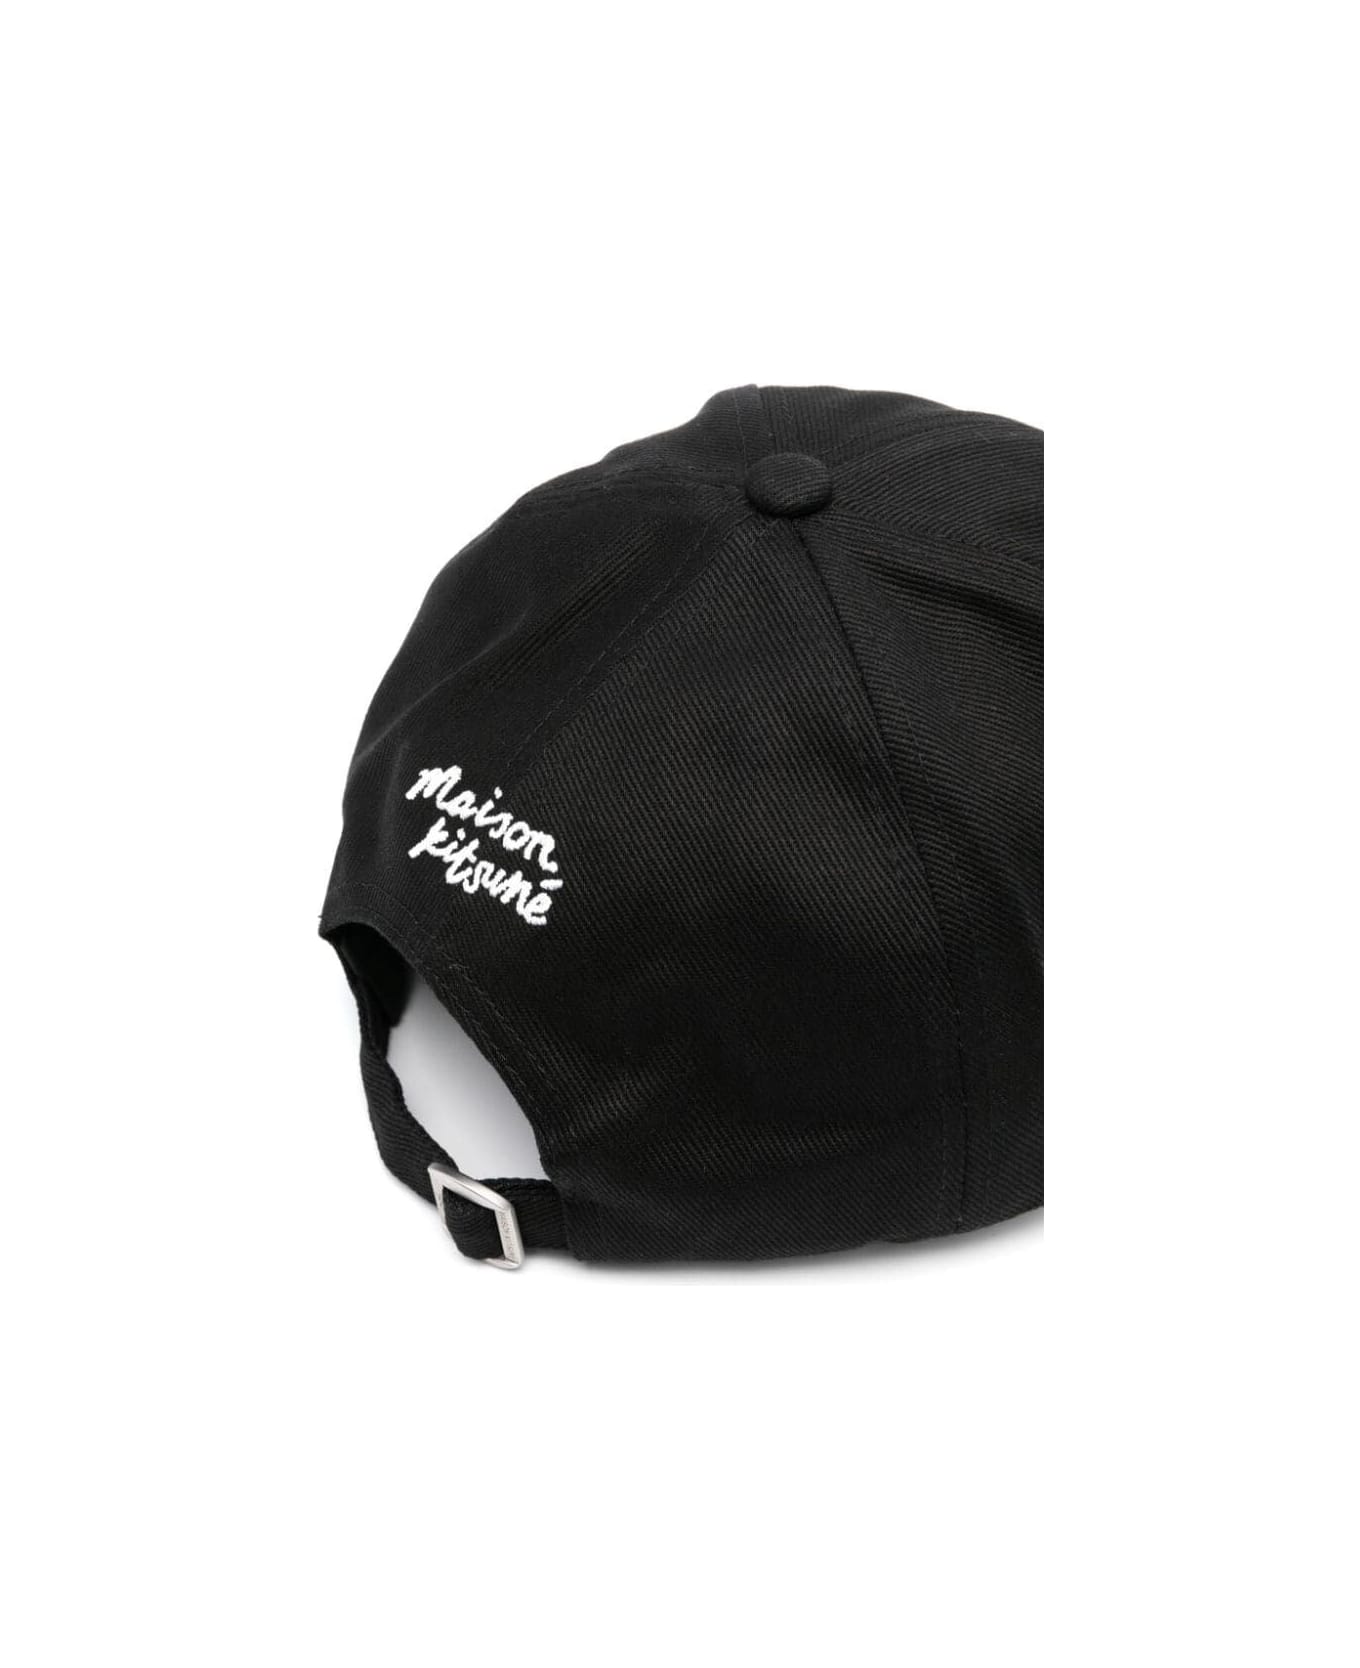 Maison Kitsuné Large Fox Head 6p Cap - Black 帽子